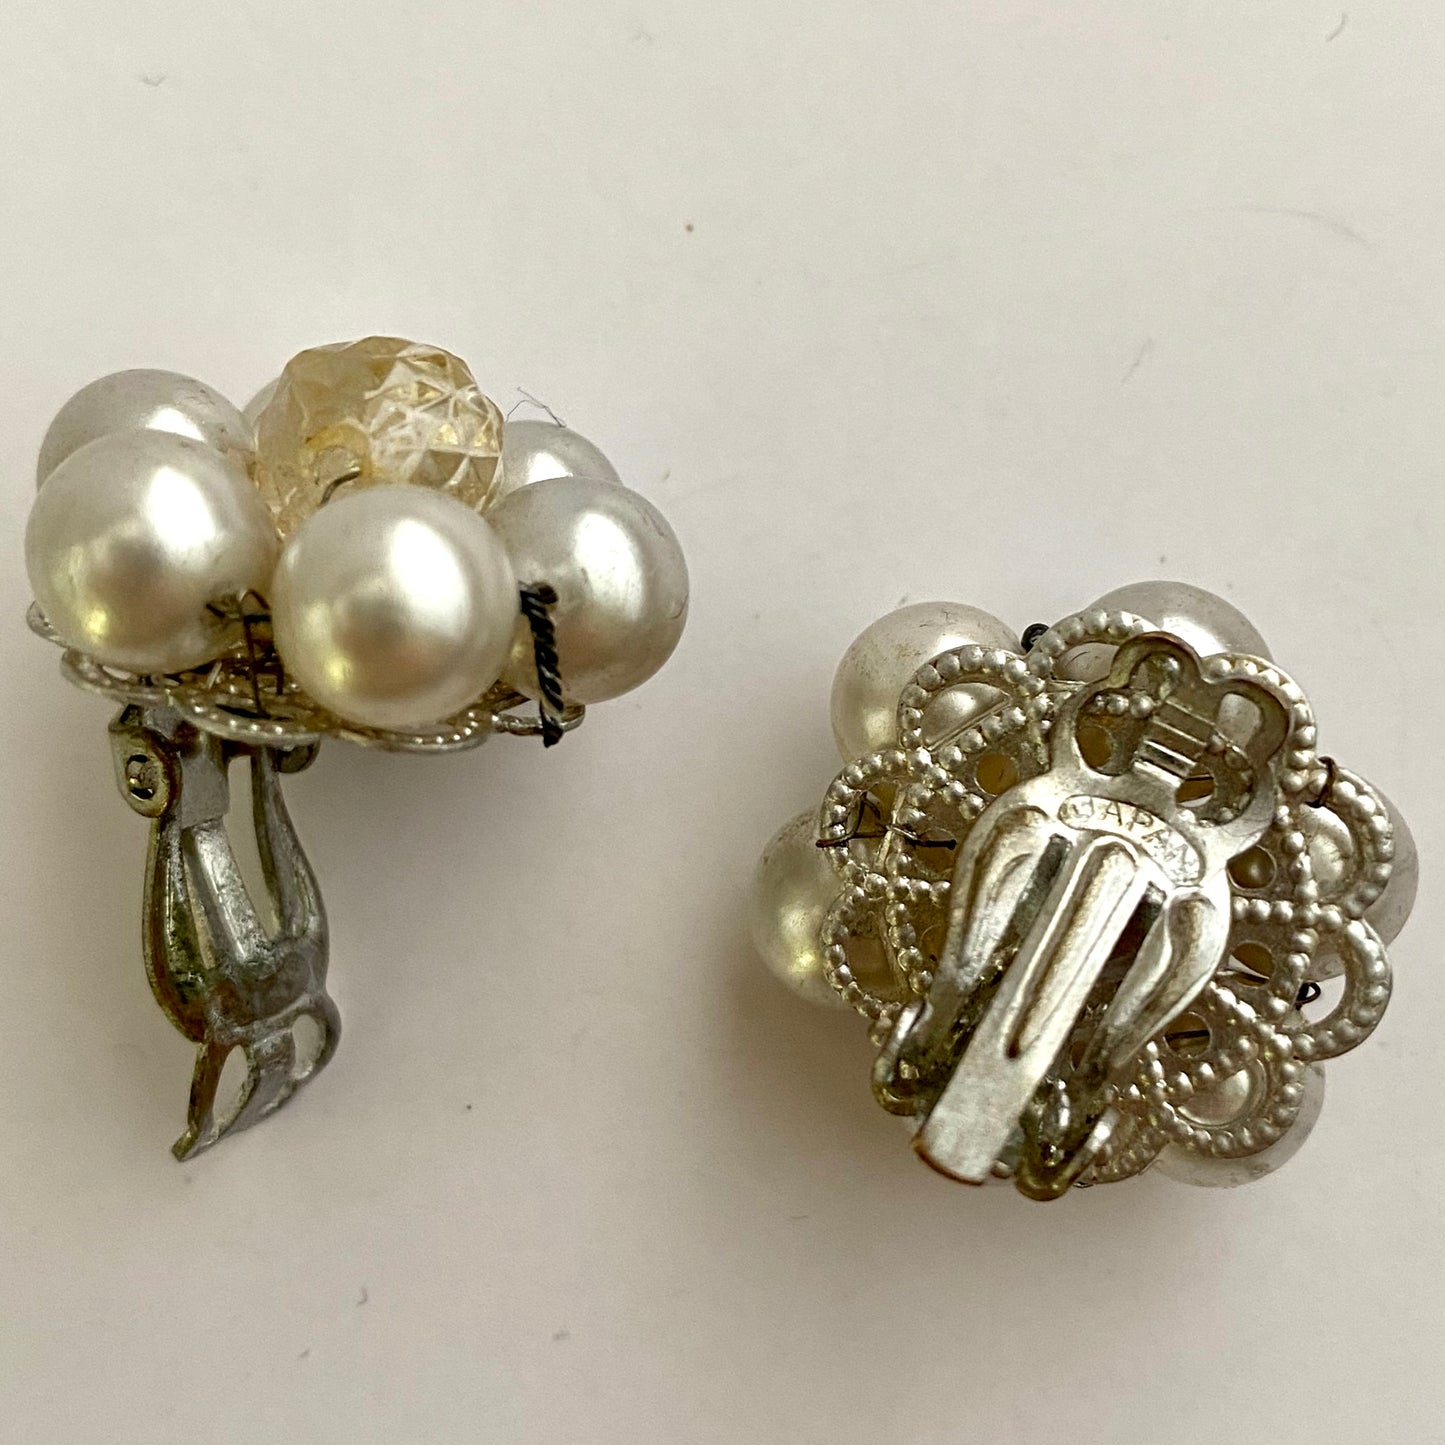 1960s Japan Flower Shaped Bead Earrings